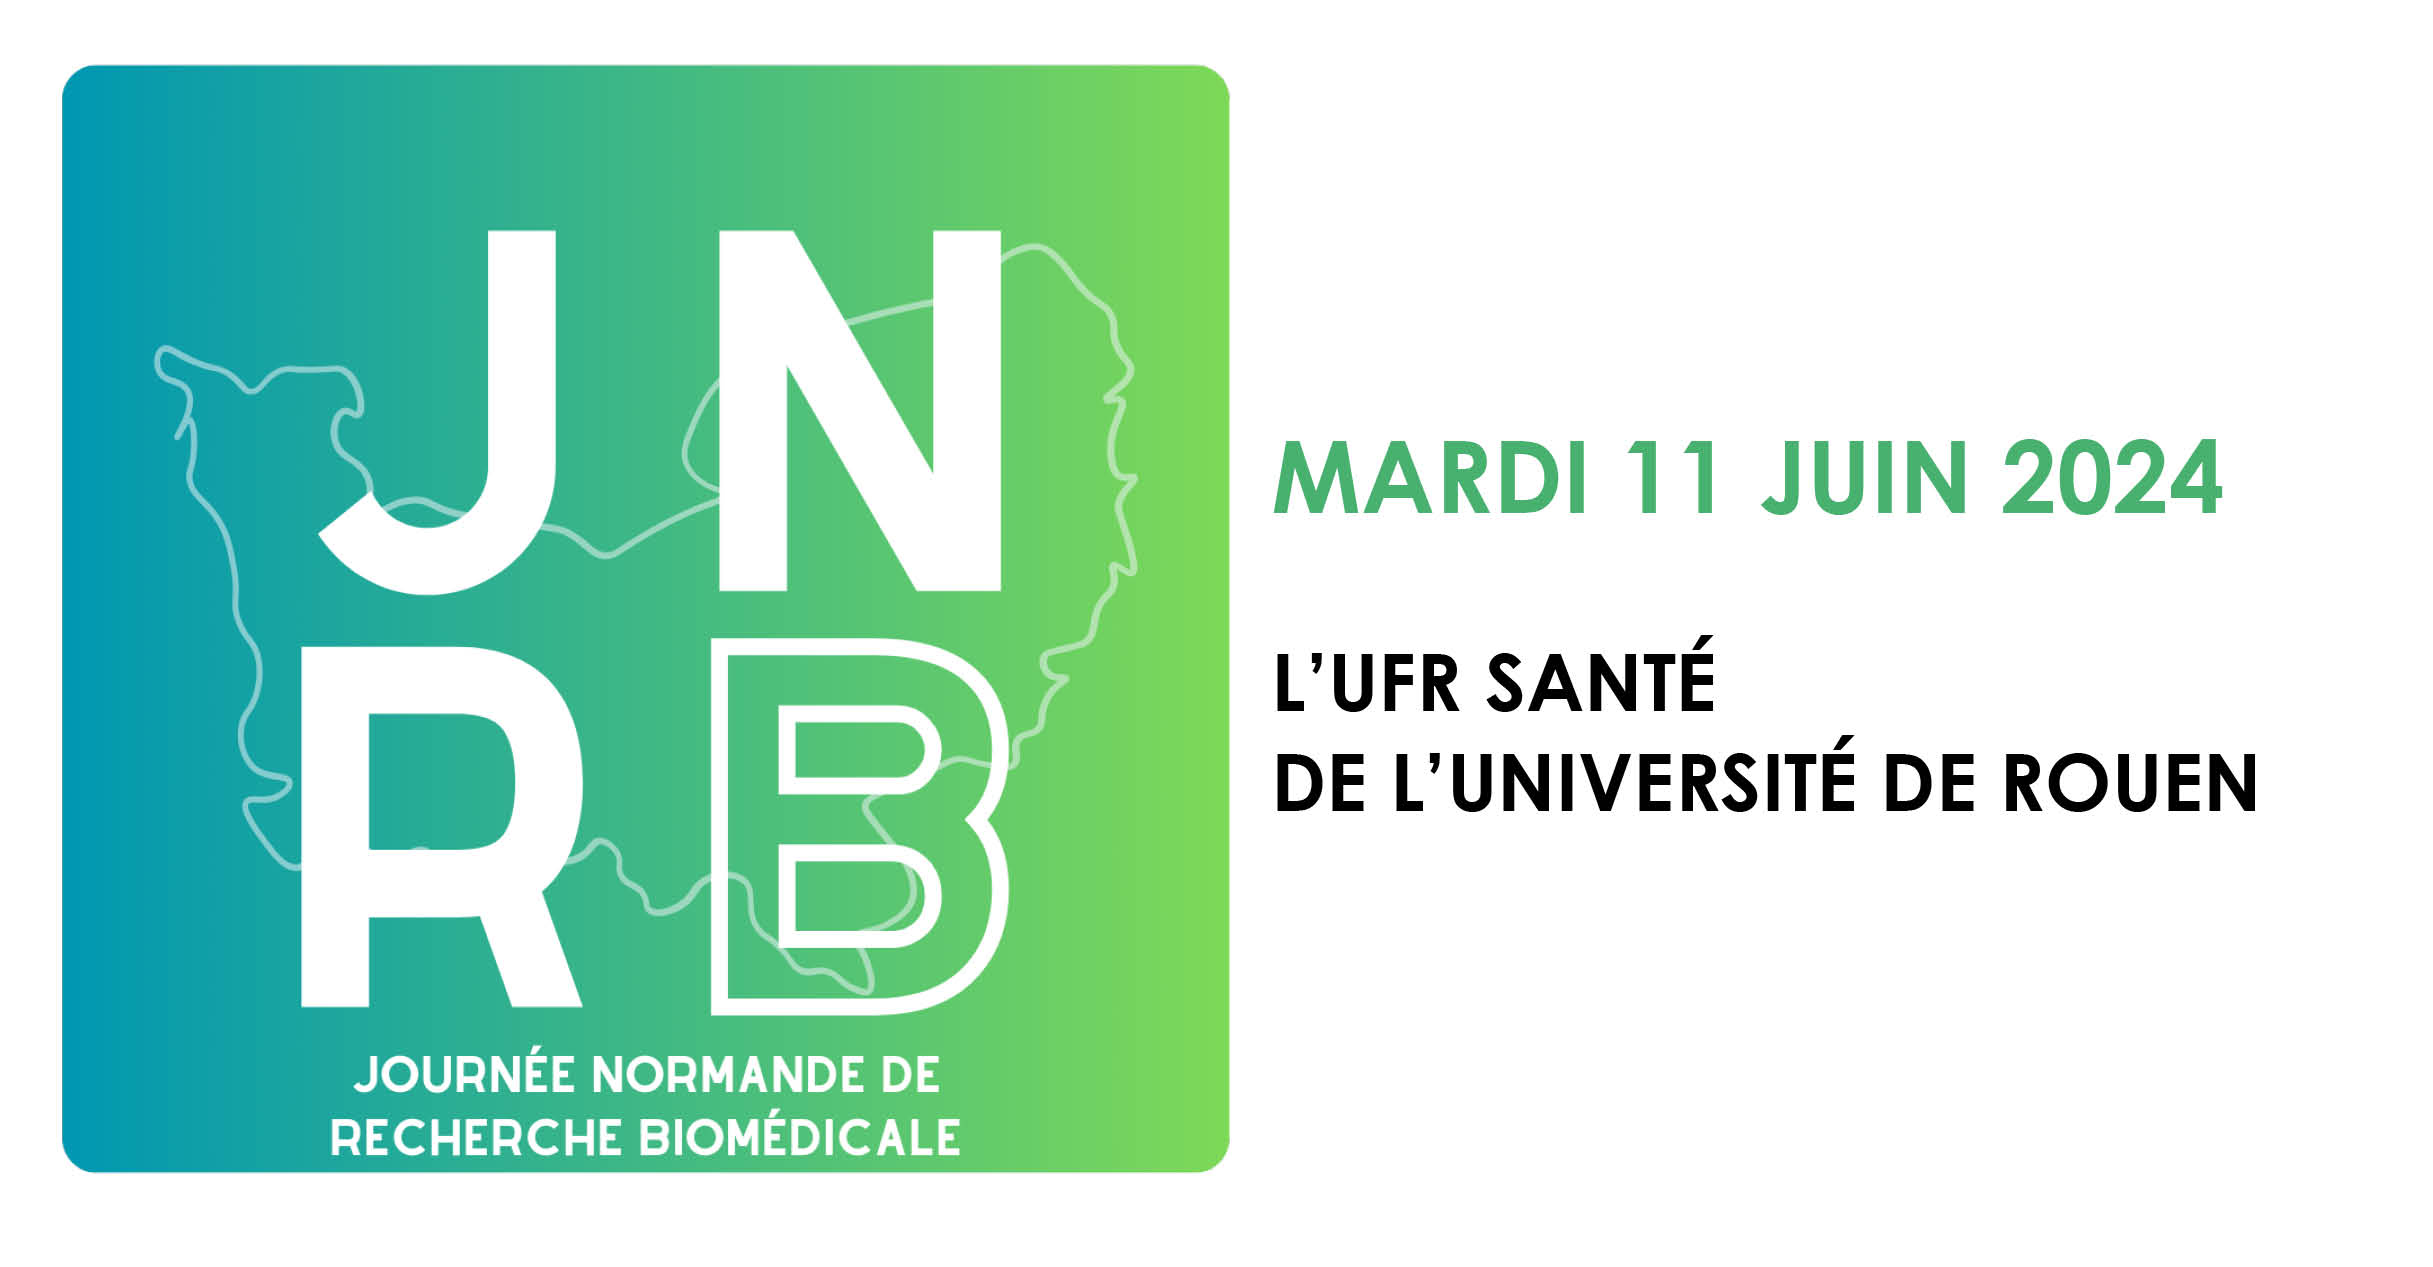 JNRB - Journée Normande de Recherche Biomédicale